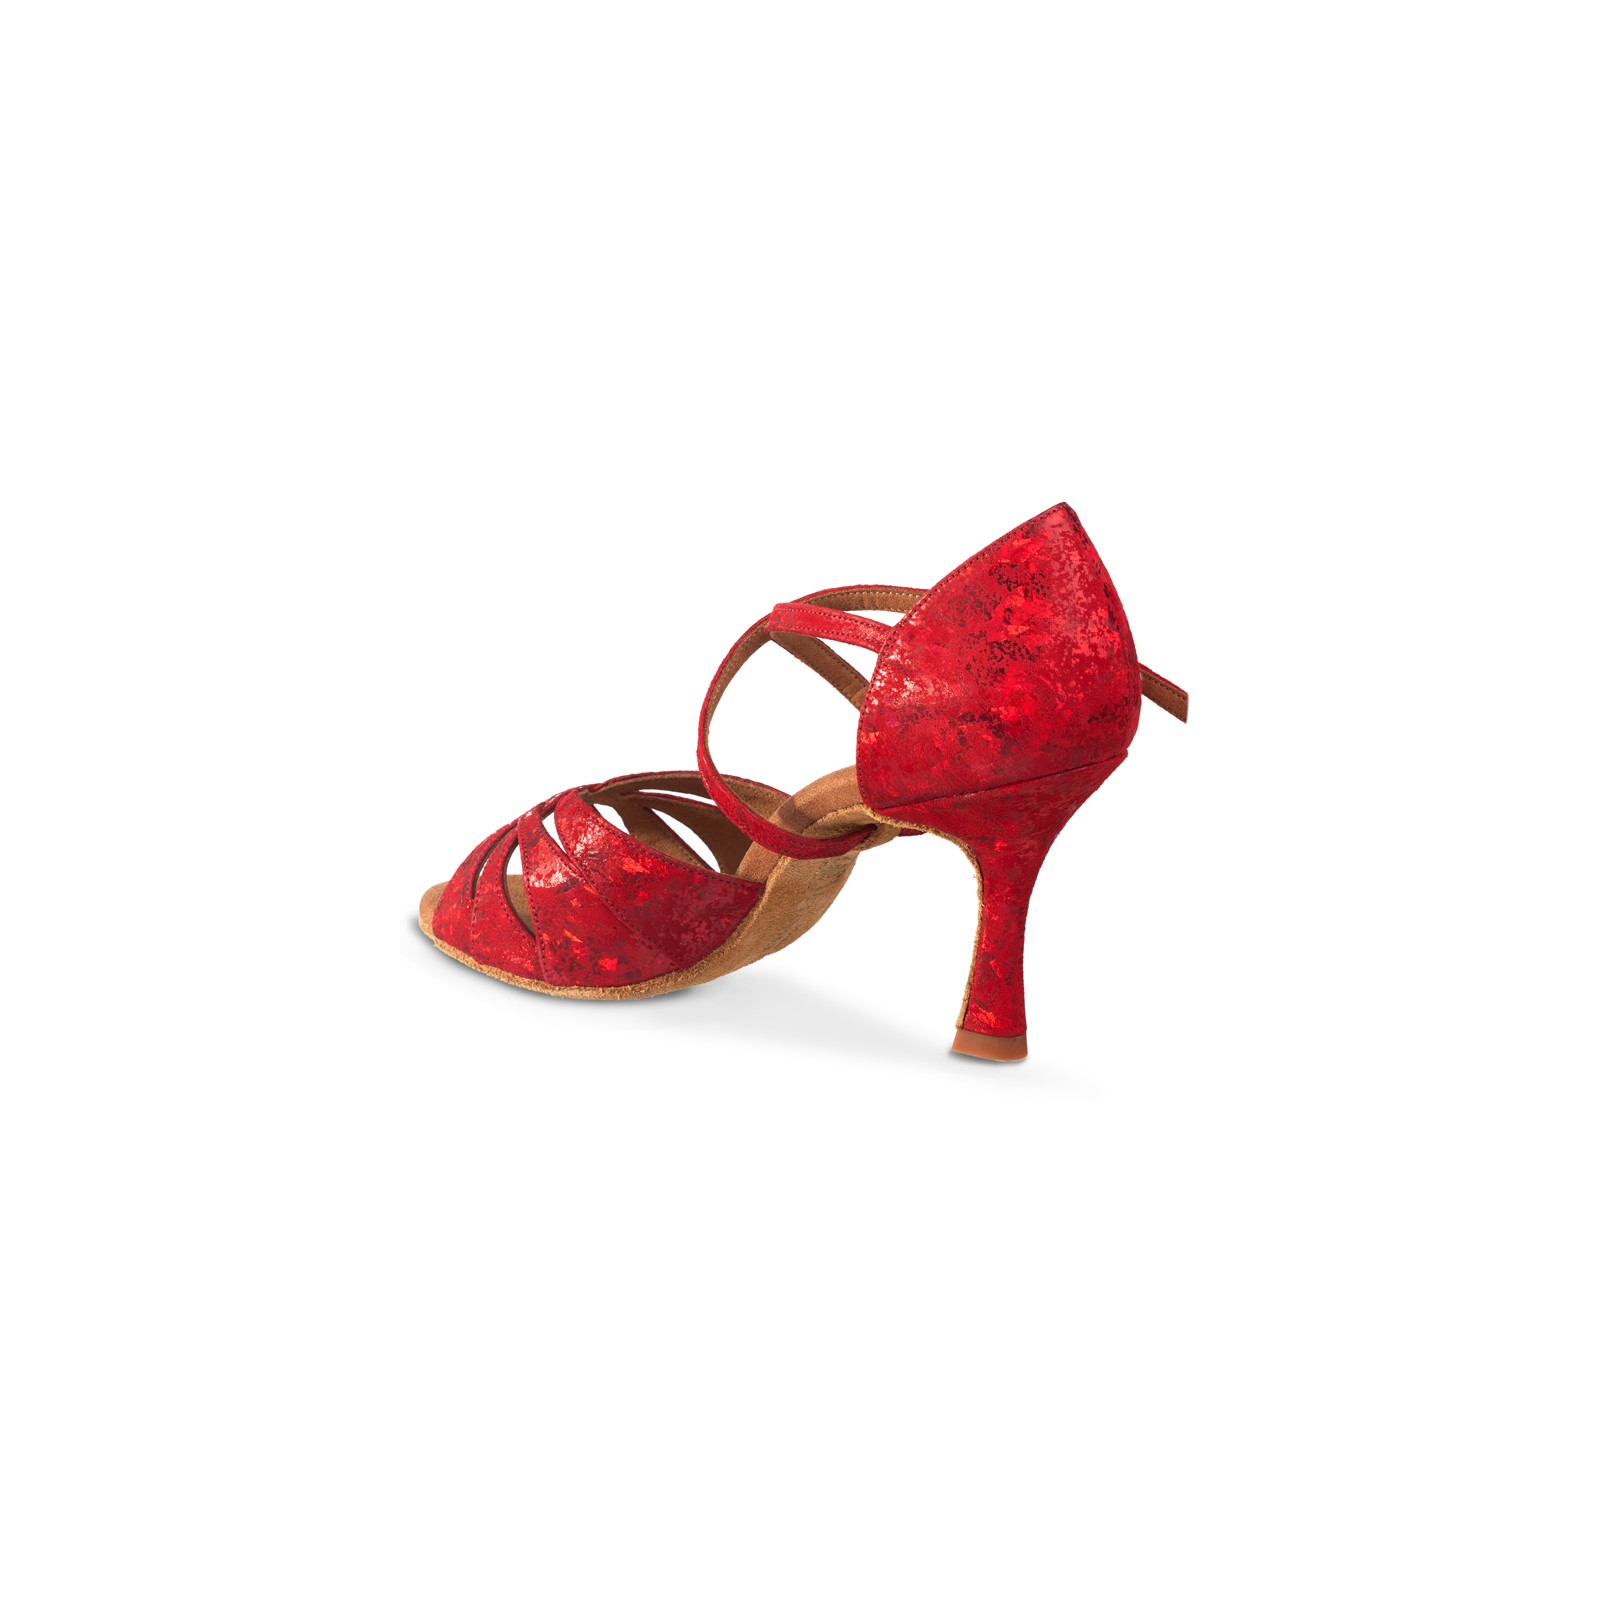 HXYOO Chaussures de Danse de Salon dintérieur pour Les Femmes Slasa Latine WK010